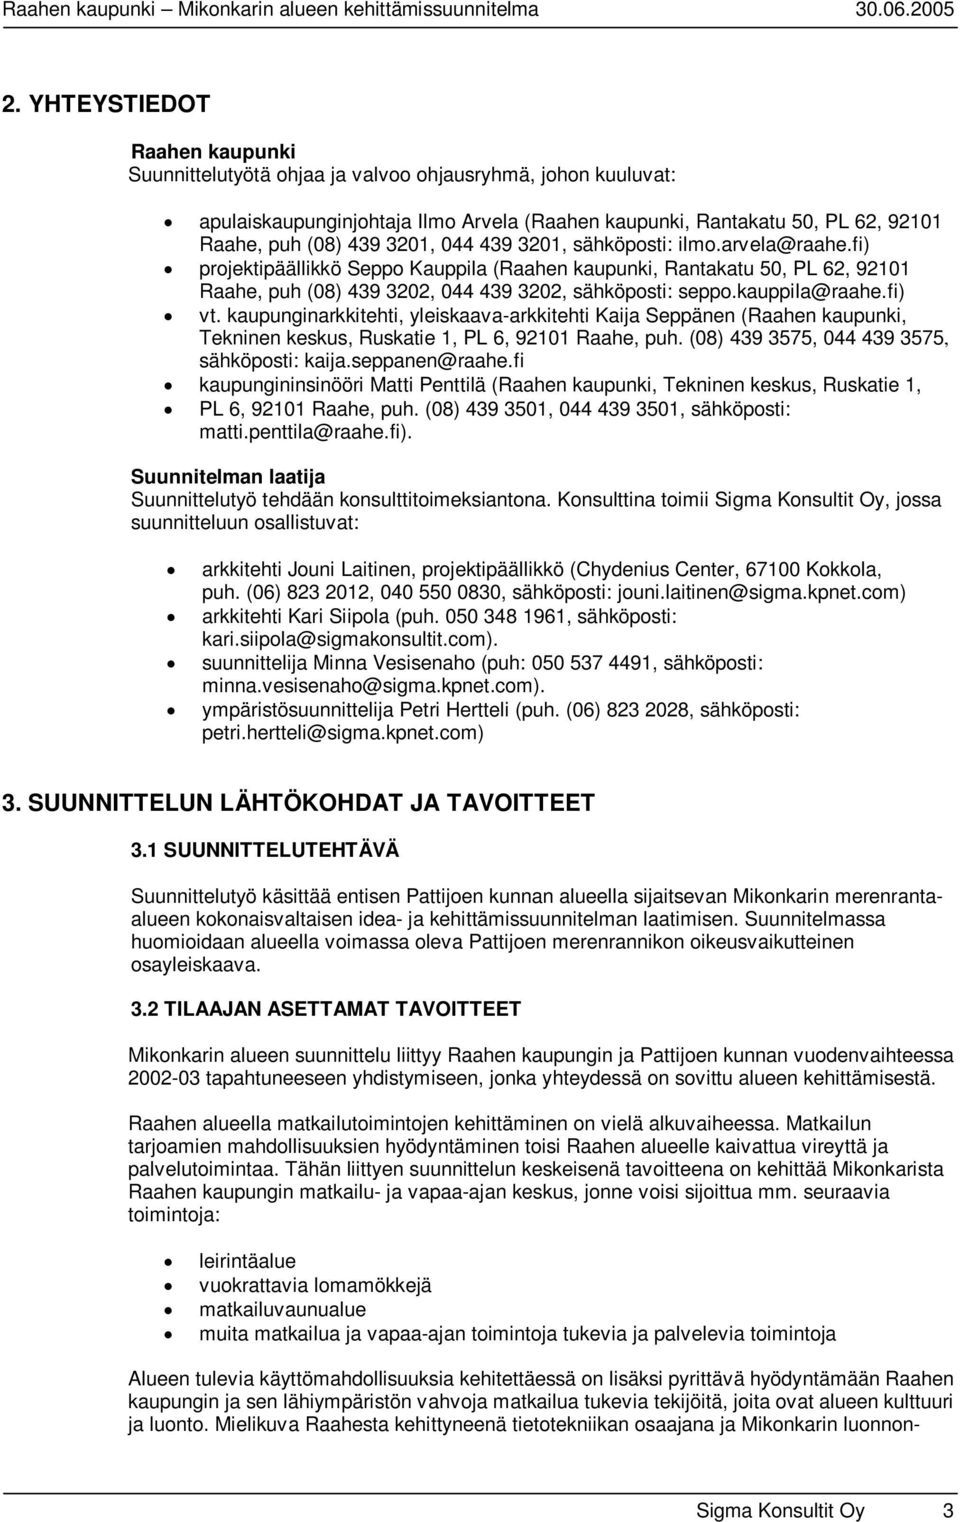 kauppila@raahe.fi) vt. kaupunginarkkitehti, yleiskaava-arkkitehti Kaija Seppänen (Raahen kaupunki, Tekninen keskus, Ruskatie 1, PL 6, 92101 Raahe, puh. (08) 439 3575, 044 439 3575, sähköposti: kaija.